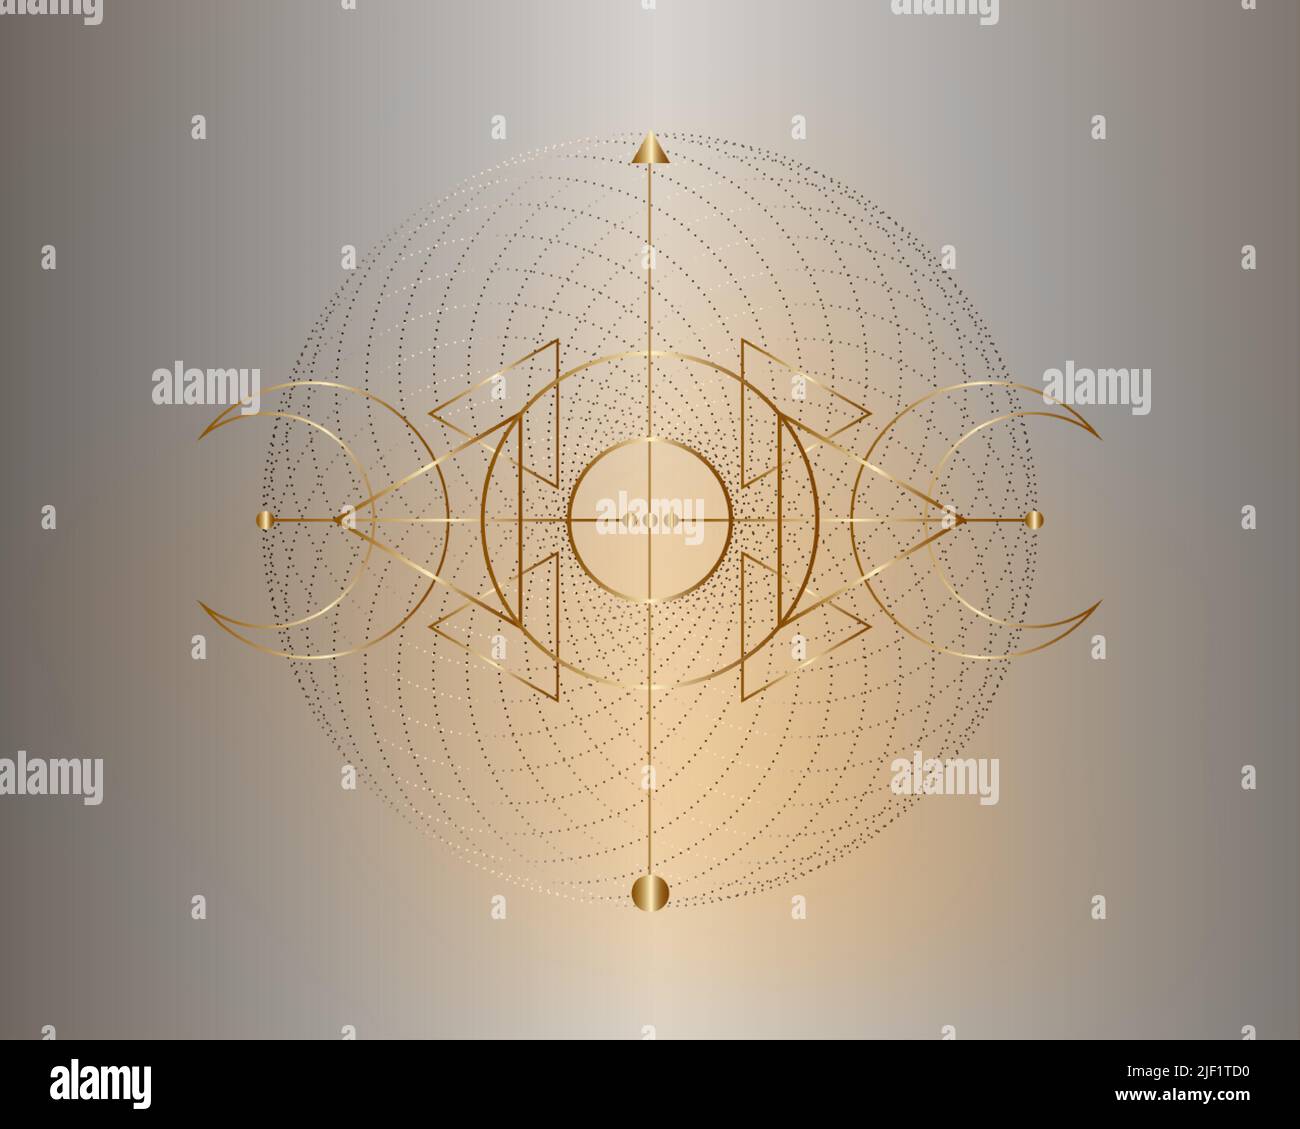 Triple lune magique. Symbole d'or de la divinité Viking, de la géométrie sacrée celtique, du logo Wiccan, des triangles ésotériques alchimy. Vecteur d'objet d'occultisme spirituel Illustration de Vecteur